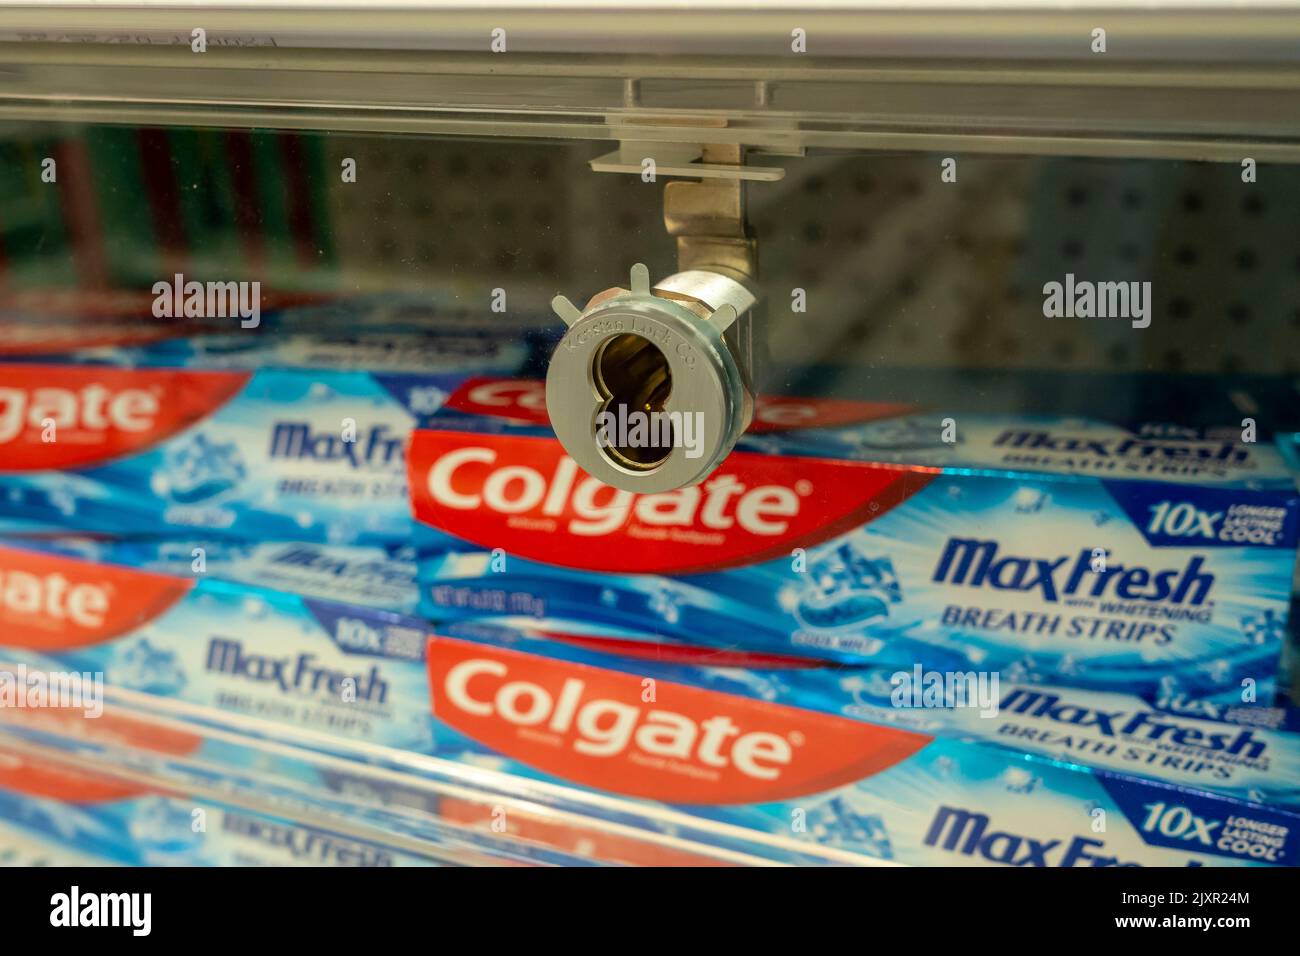 Tubes of Colgate-PalmolivesÕ Colgate dentifricio sono rinchiusi fino a dissuadere i taccheggiatori in un negozio a New York Domenica, 28 agosto 2022. (© Richard B. Levine) Foto Stock